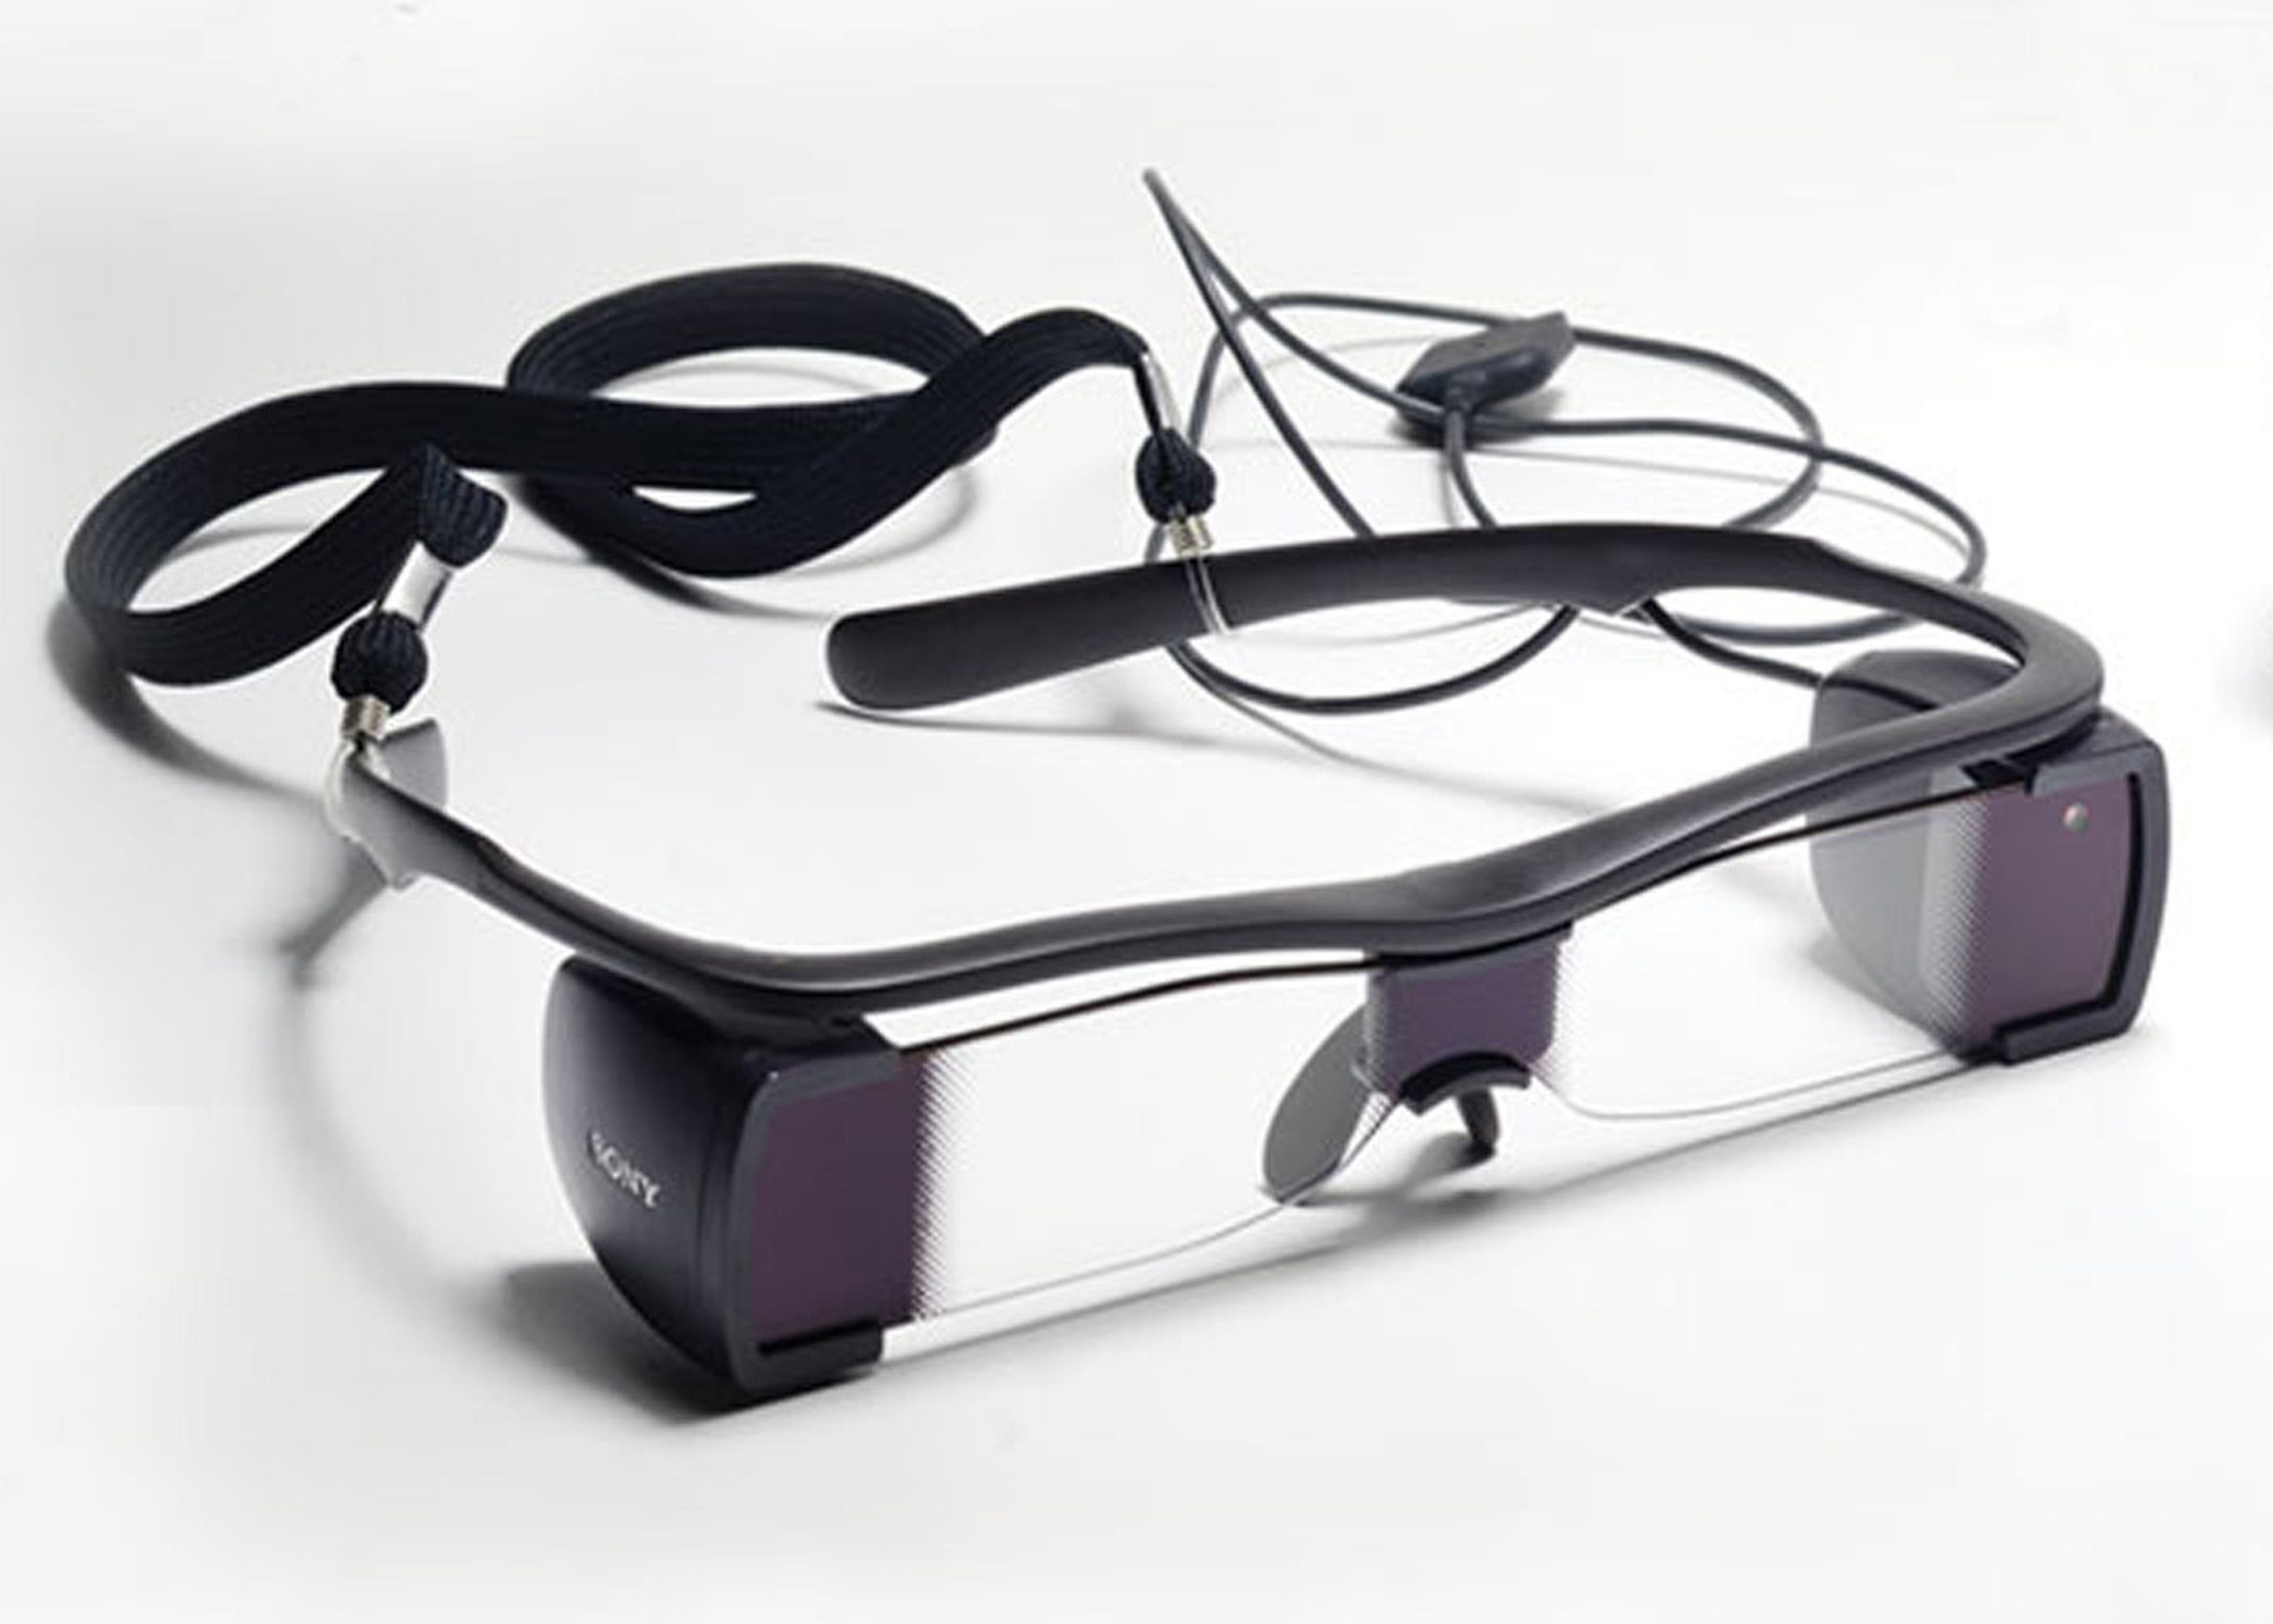 Mkt sensorial y mundo phygital: gafas de realidad aumentada